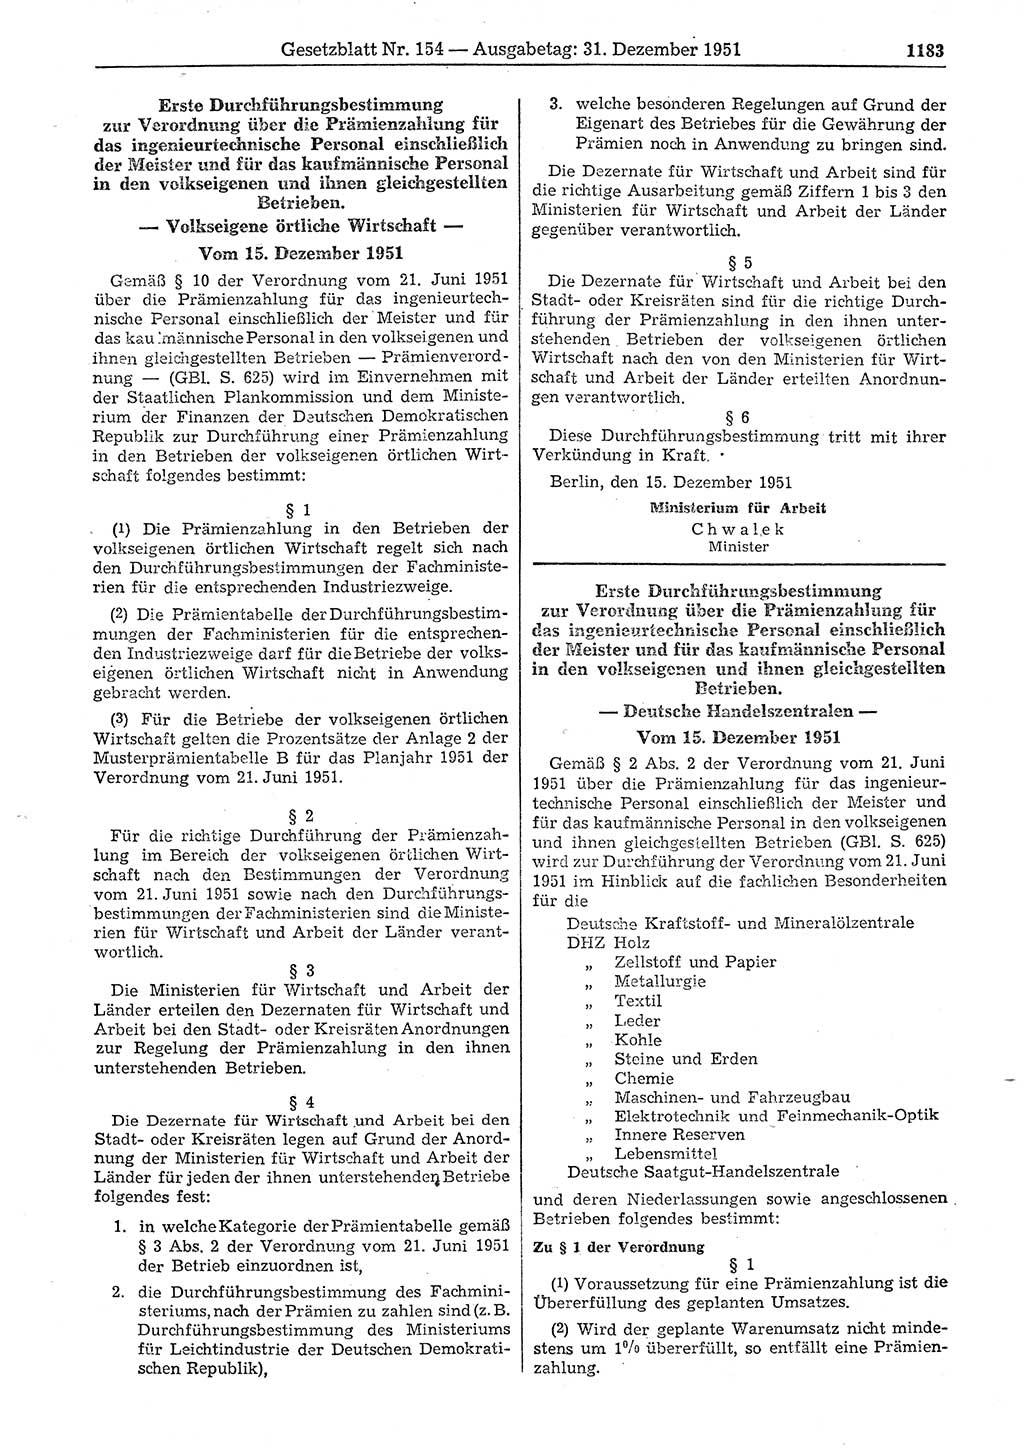 Gesetzblatt (GBl.) der Deutschen Demokratischen Republik (DDR) 1951, Seite 1183 (GBl. DDR 1951, S. 1183)